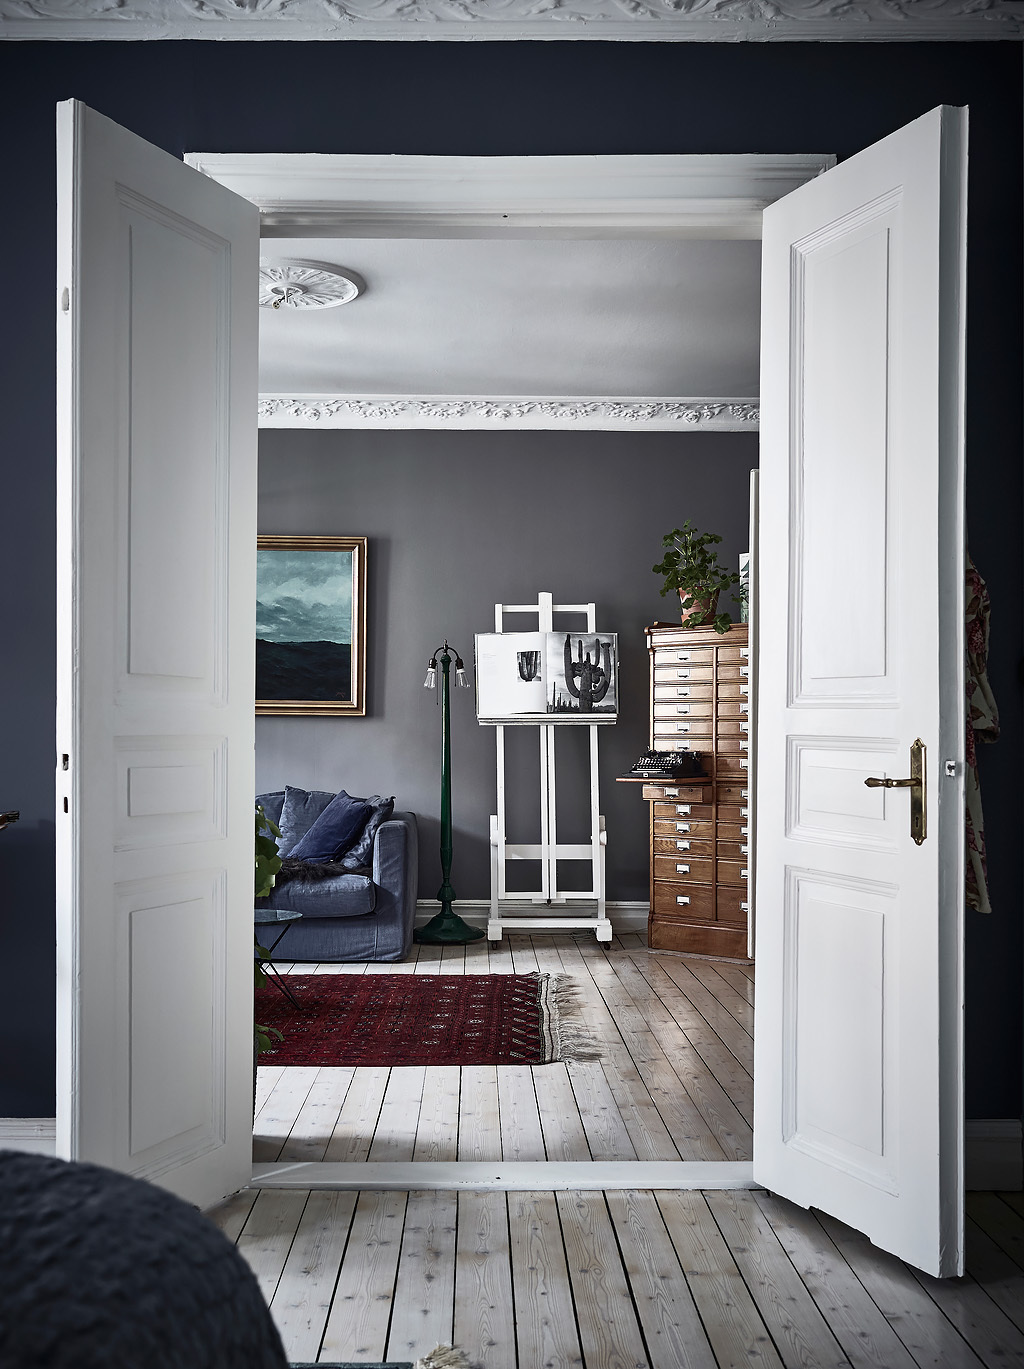 bohemian artist home scandinavian apartment  with houseplants wall art fireplace blue walls